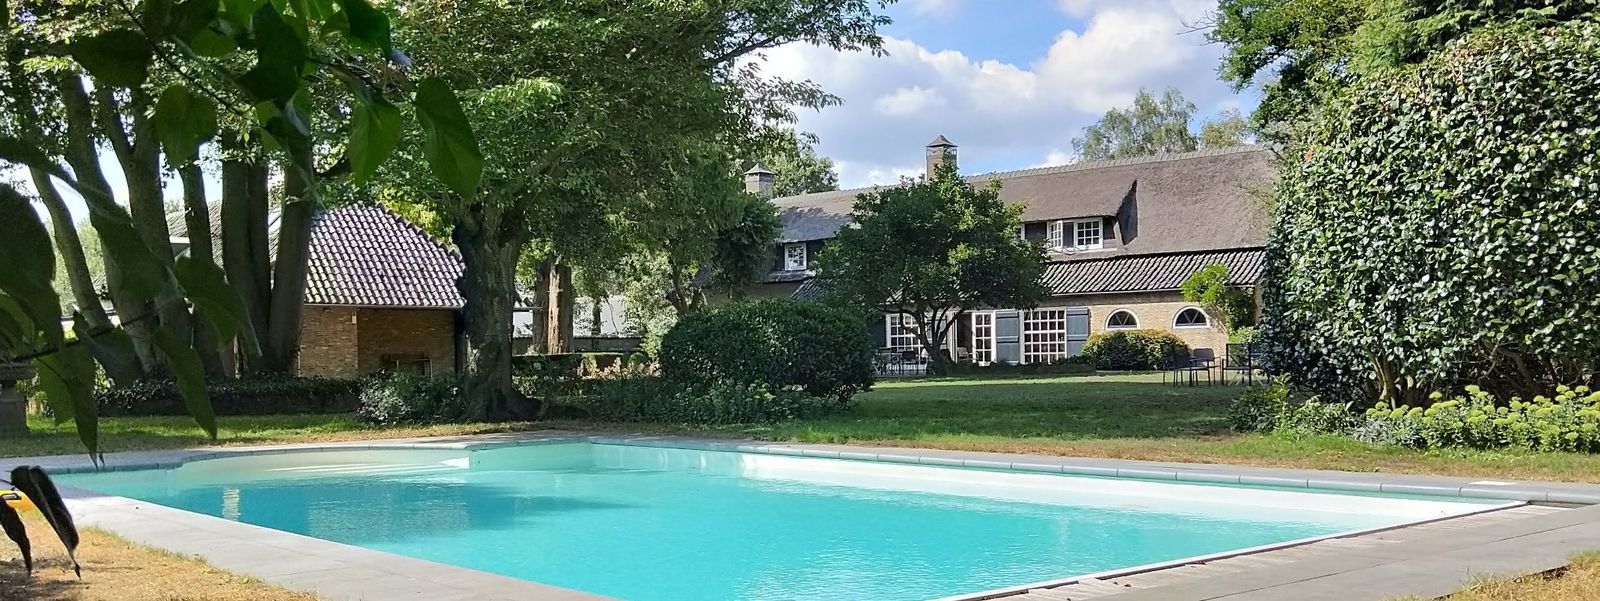 Vrachelse Heide - luxe vakantiehuis in Brabant met zwembad in zomermaanden